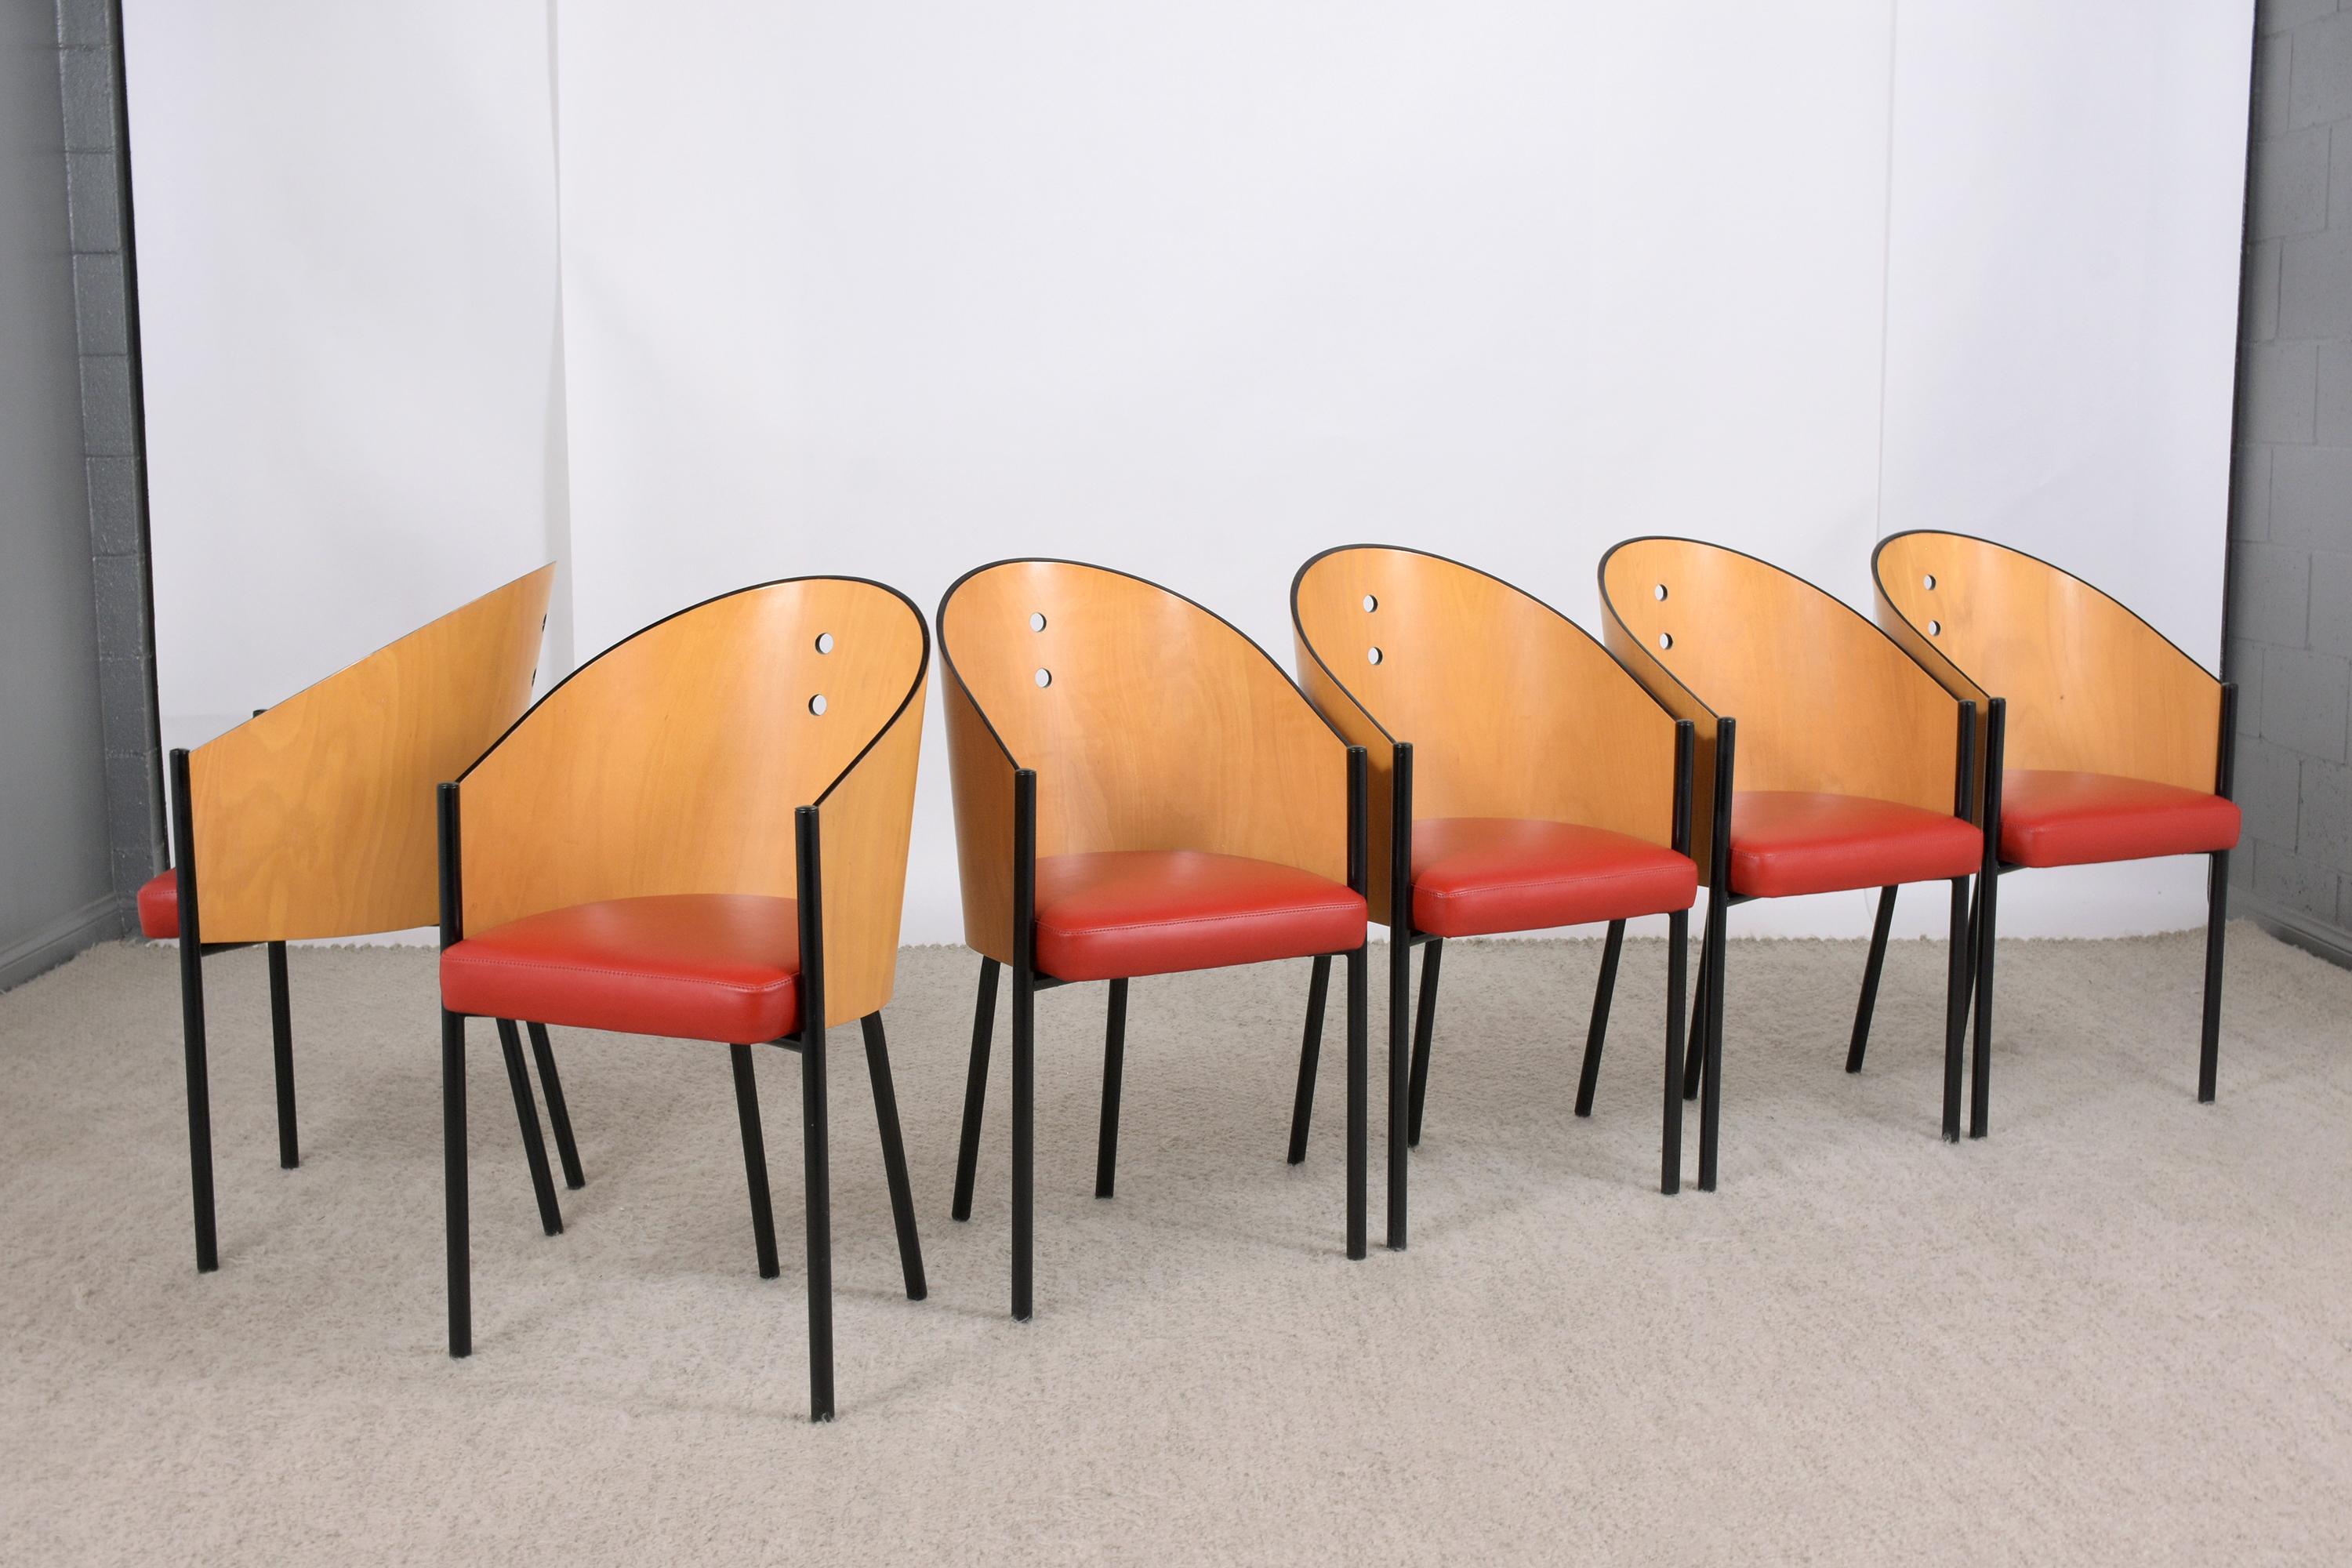 Wir stellen Ihnen unsere exquisite Kollektion von acht Esszimmerstühlen aus der Mitte des Jahrhunderts vor, die sich durch fachmännische Handwerkskunst und zeitloses Design auszeichnen. Diese Stühle, die von unseren erfahrenen Handwerkern